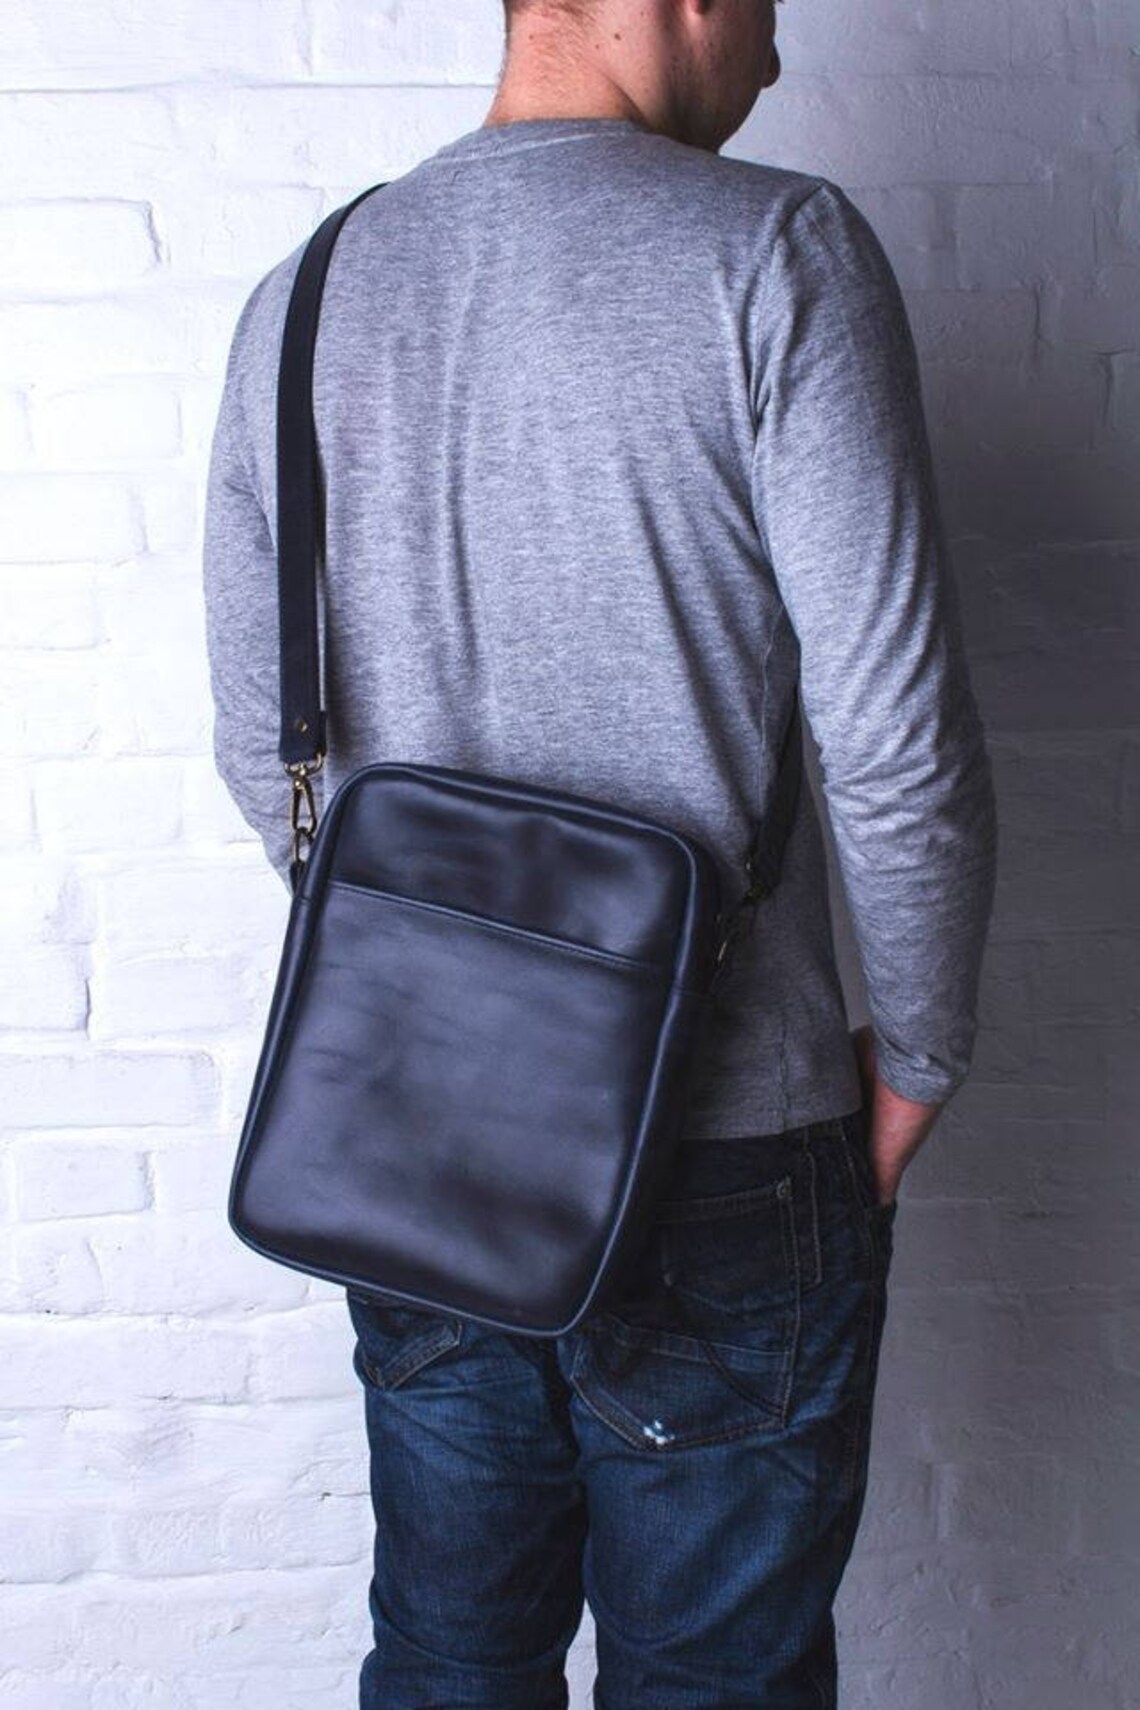 LEATHER MENS BAG vertical mens bag leather shoulder bag men | Etsy